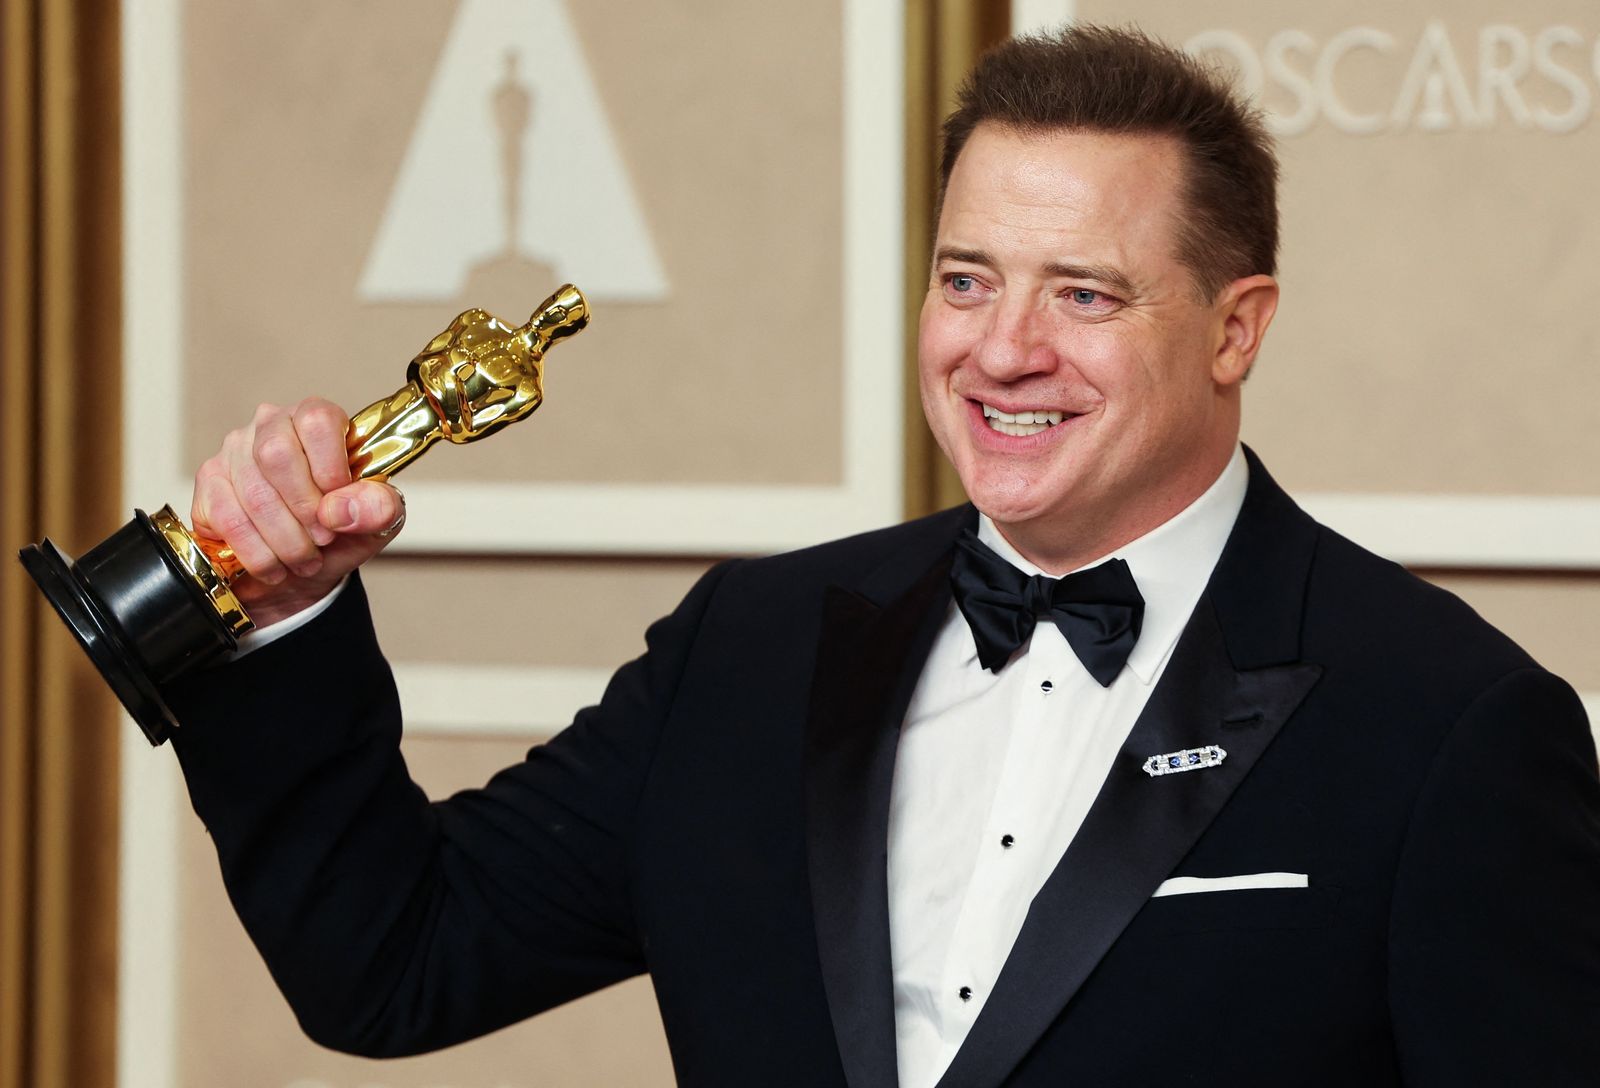 95th Academy Awards - Oscars Photo Room - Hollywood - REUTERS